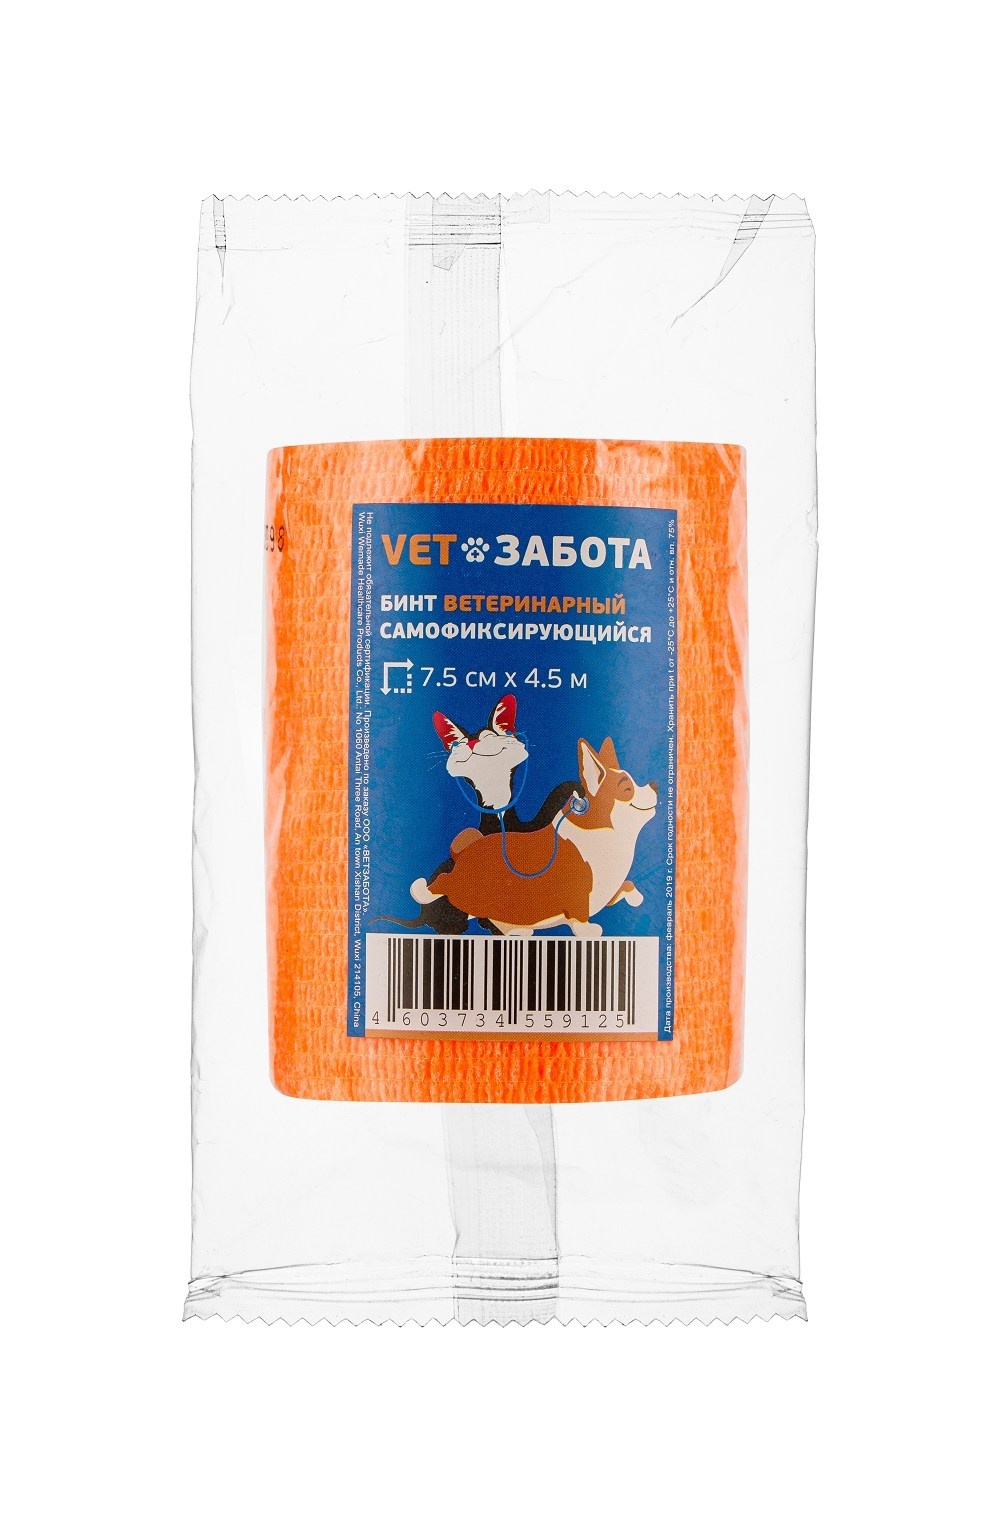 VETЗАБОТА VETЗАБОТА бинт ветеринарный оранжевый (10 см х 4.5 м) цена и фото